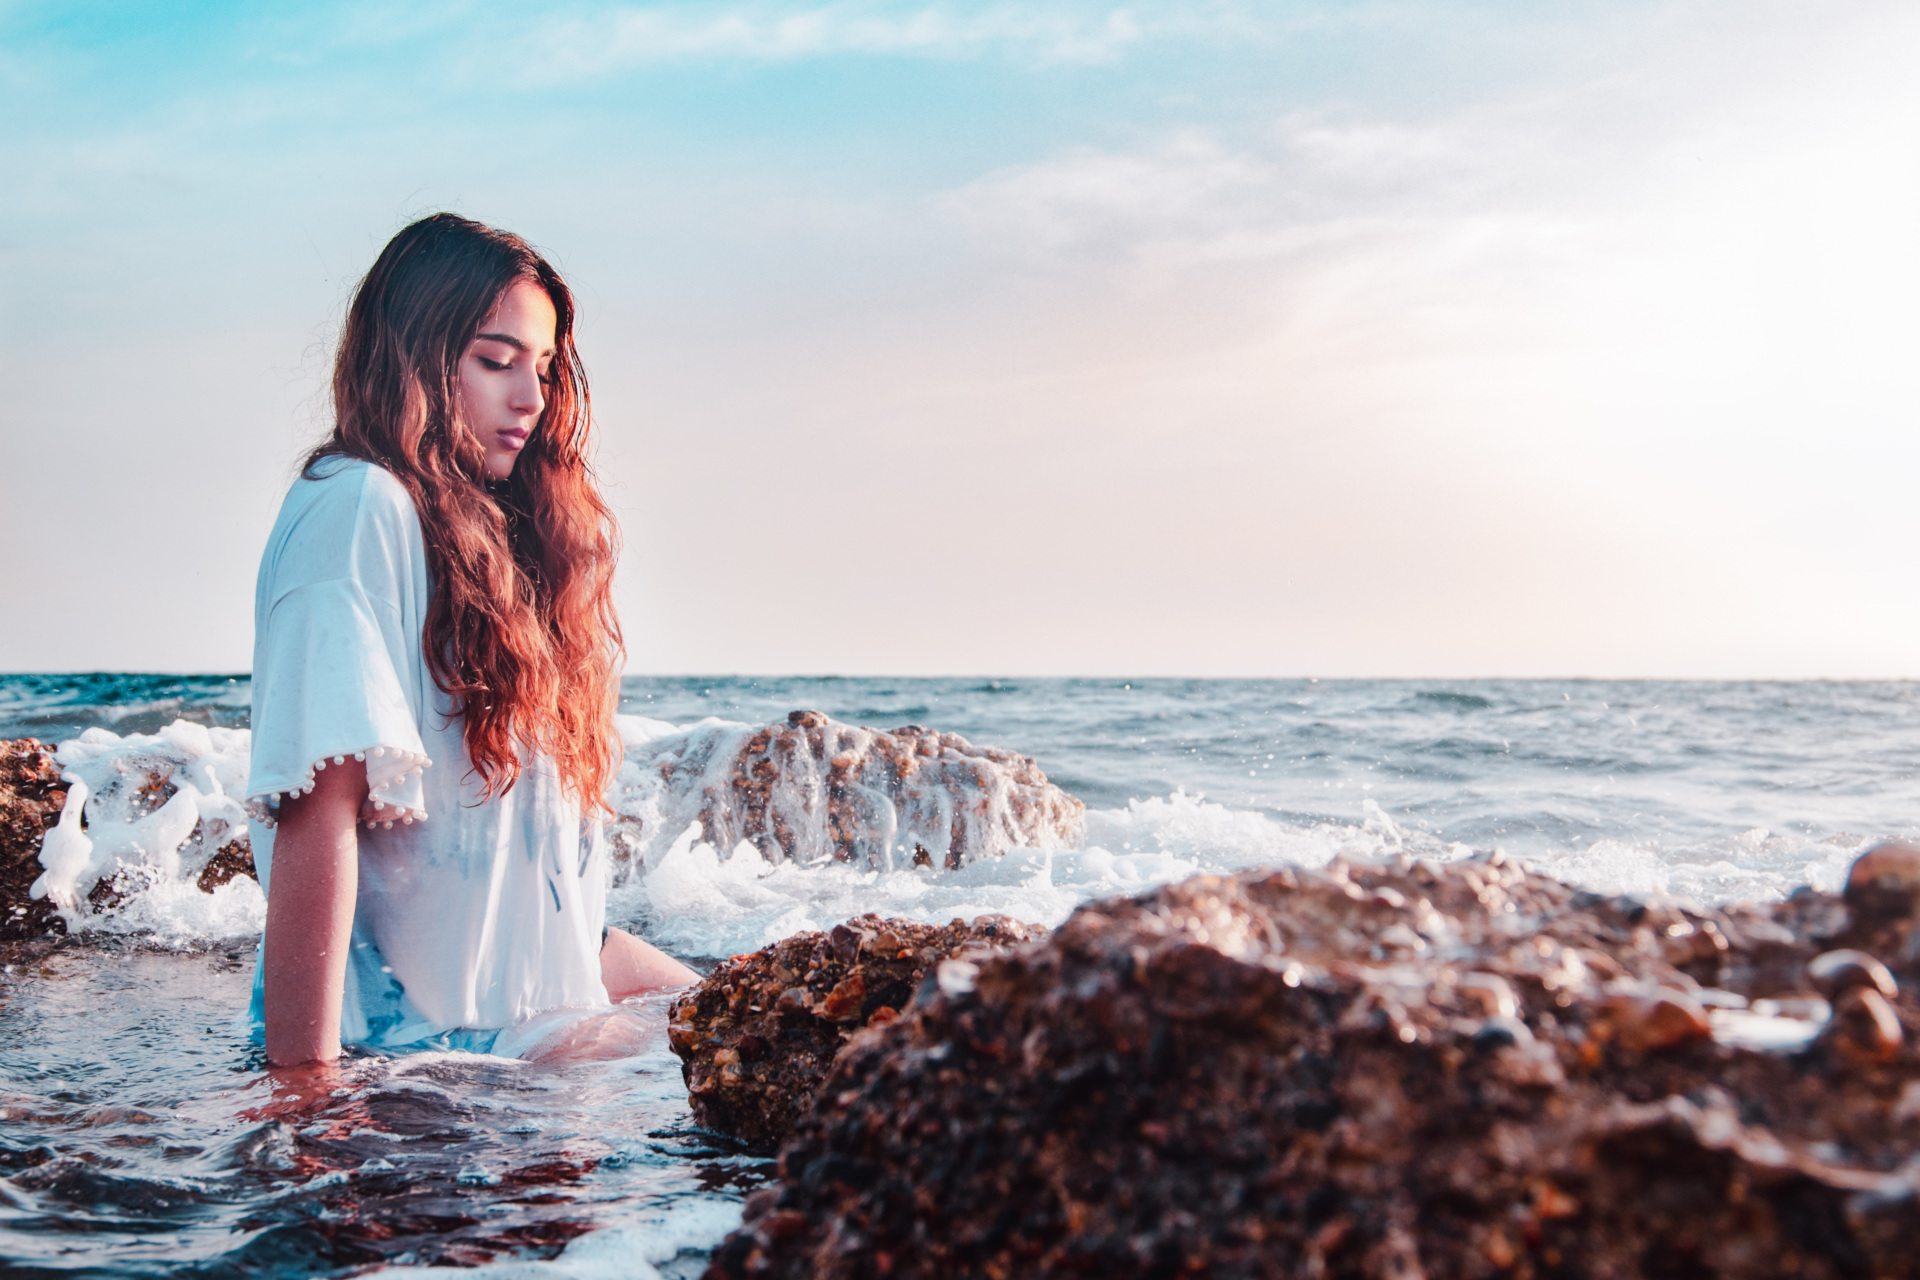 Woman sat in ocean water by rocks